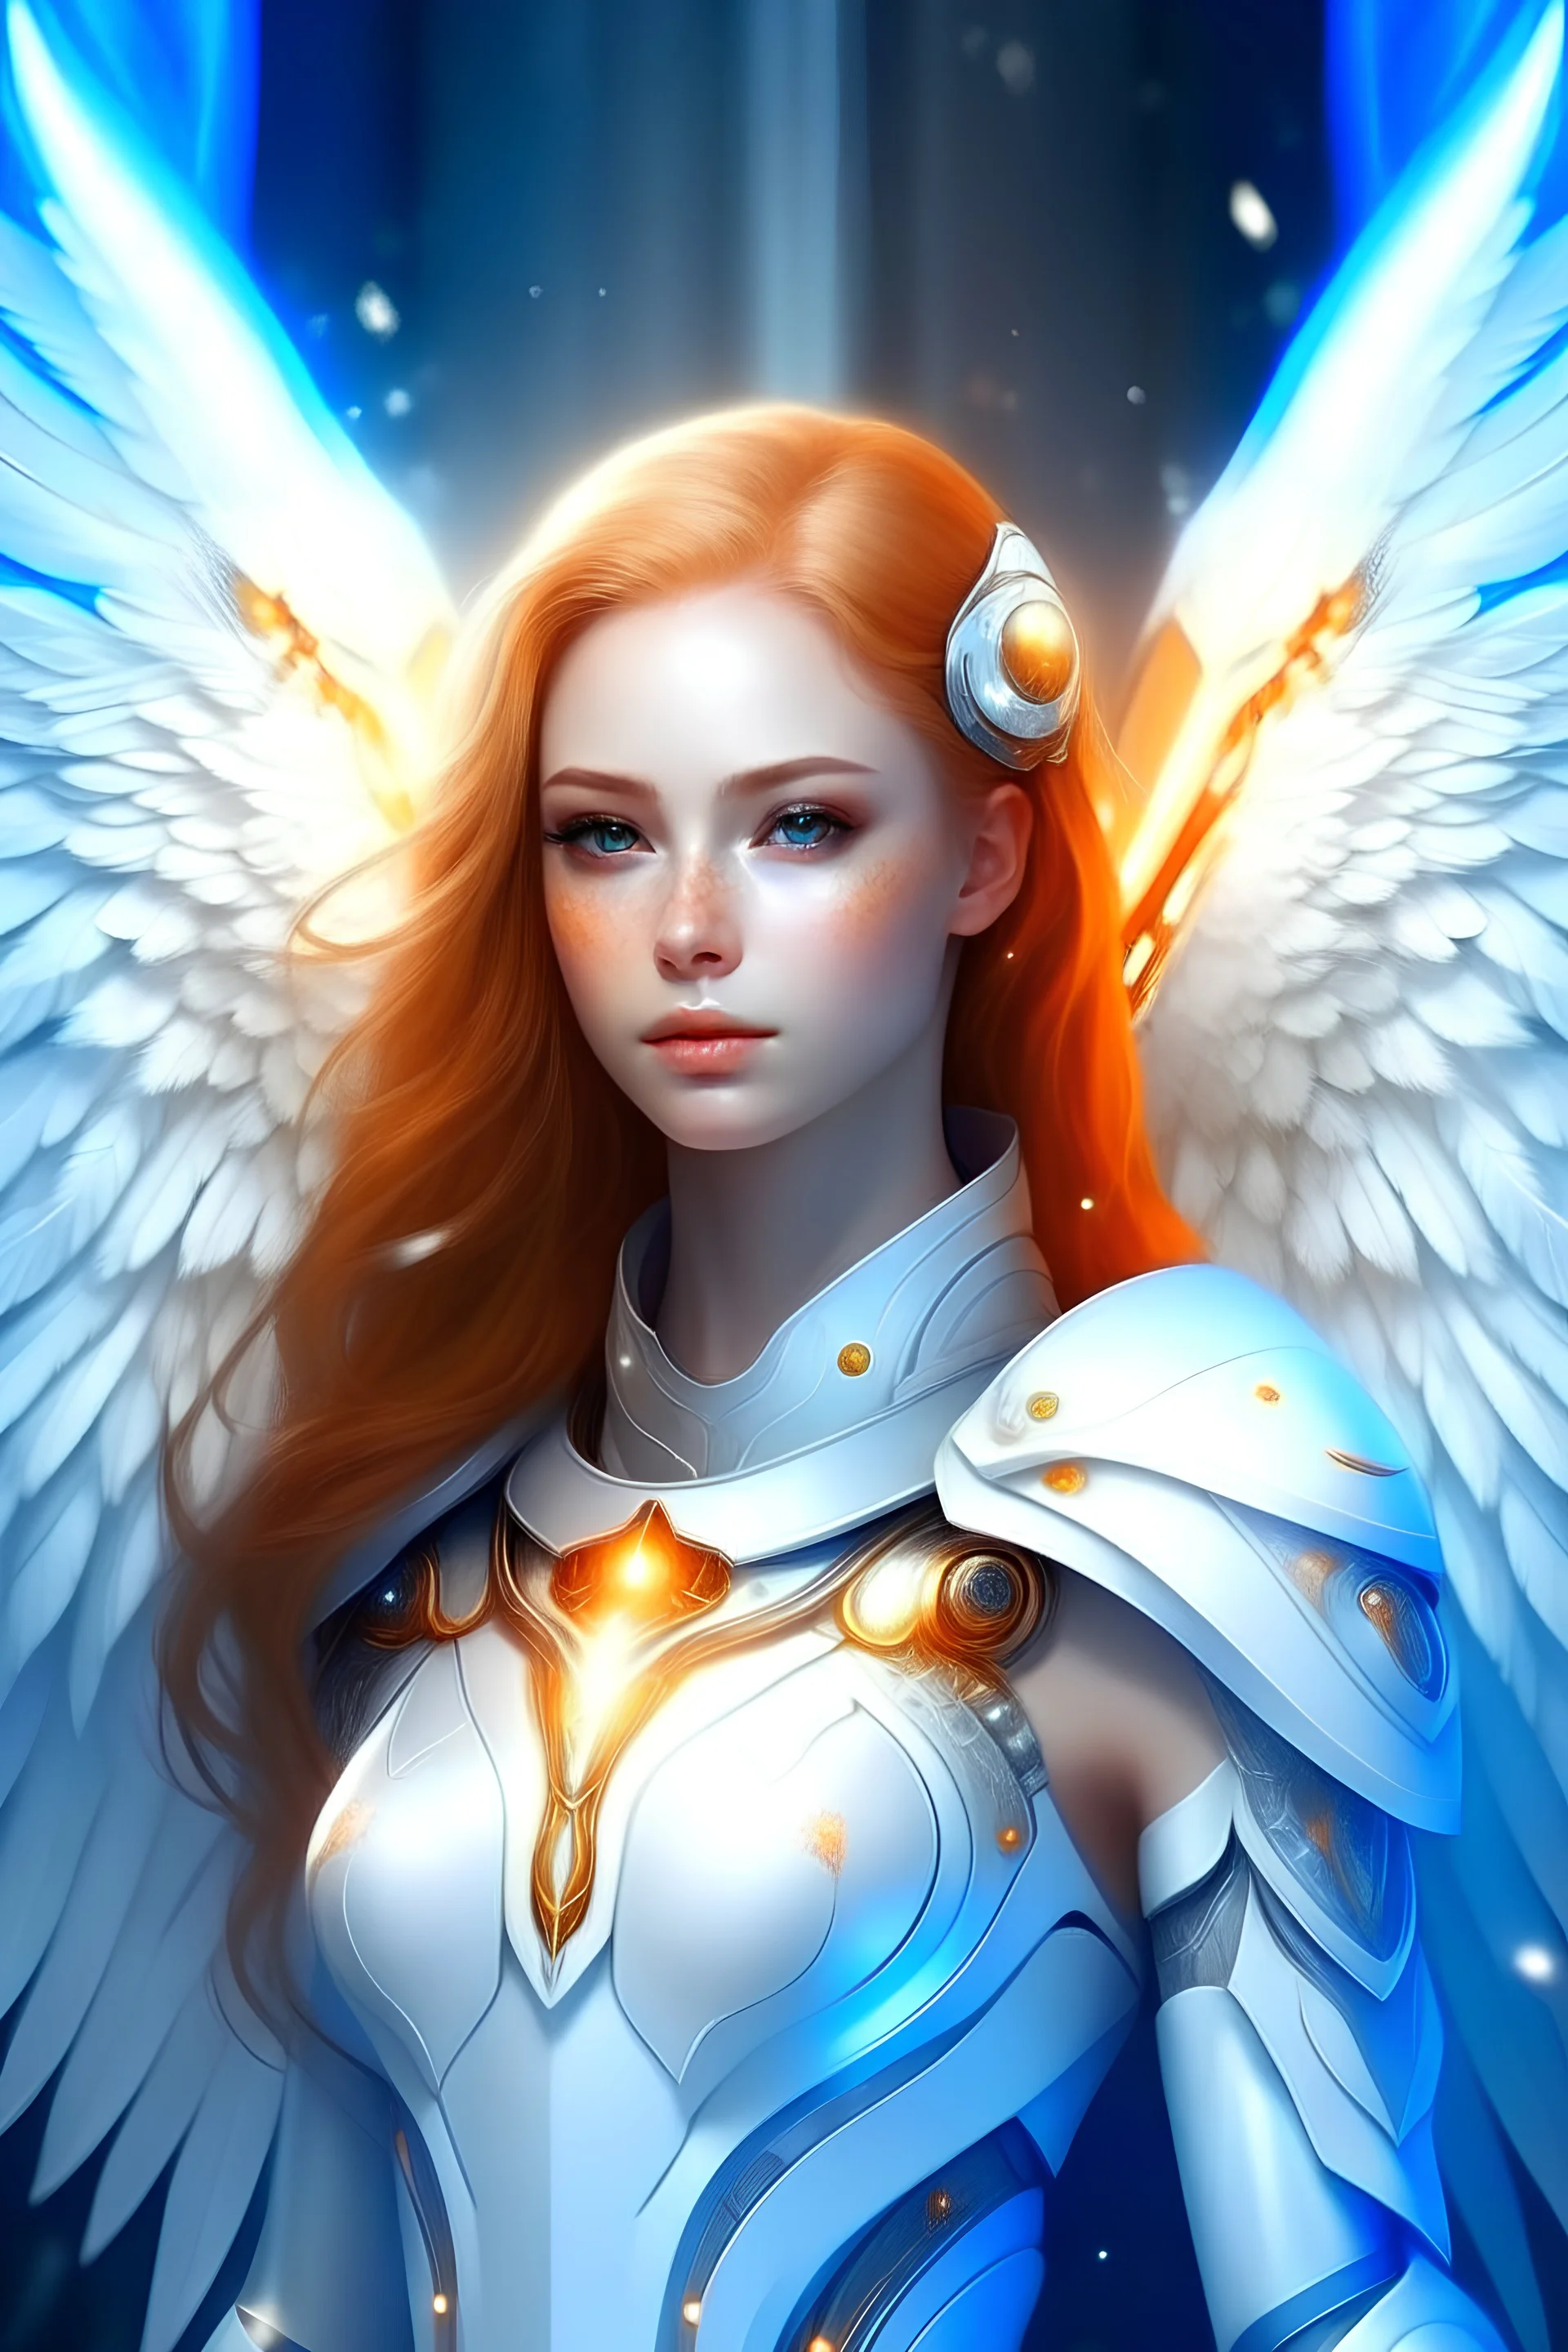 Belle jeune femme archange galactique, commandant chef flotte de vaisseaux blanc très lumineux. Archange porte combinaison blanche lumière, très féminine, divine, grandes ailes, DORÉ et BLANC NRILLANT; JEWELS, COSMOS